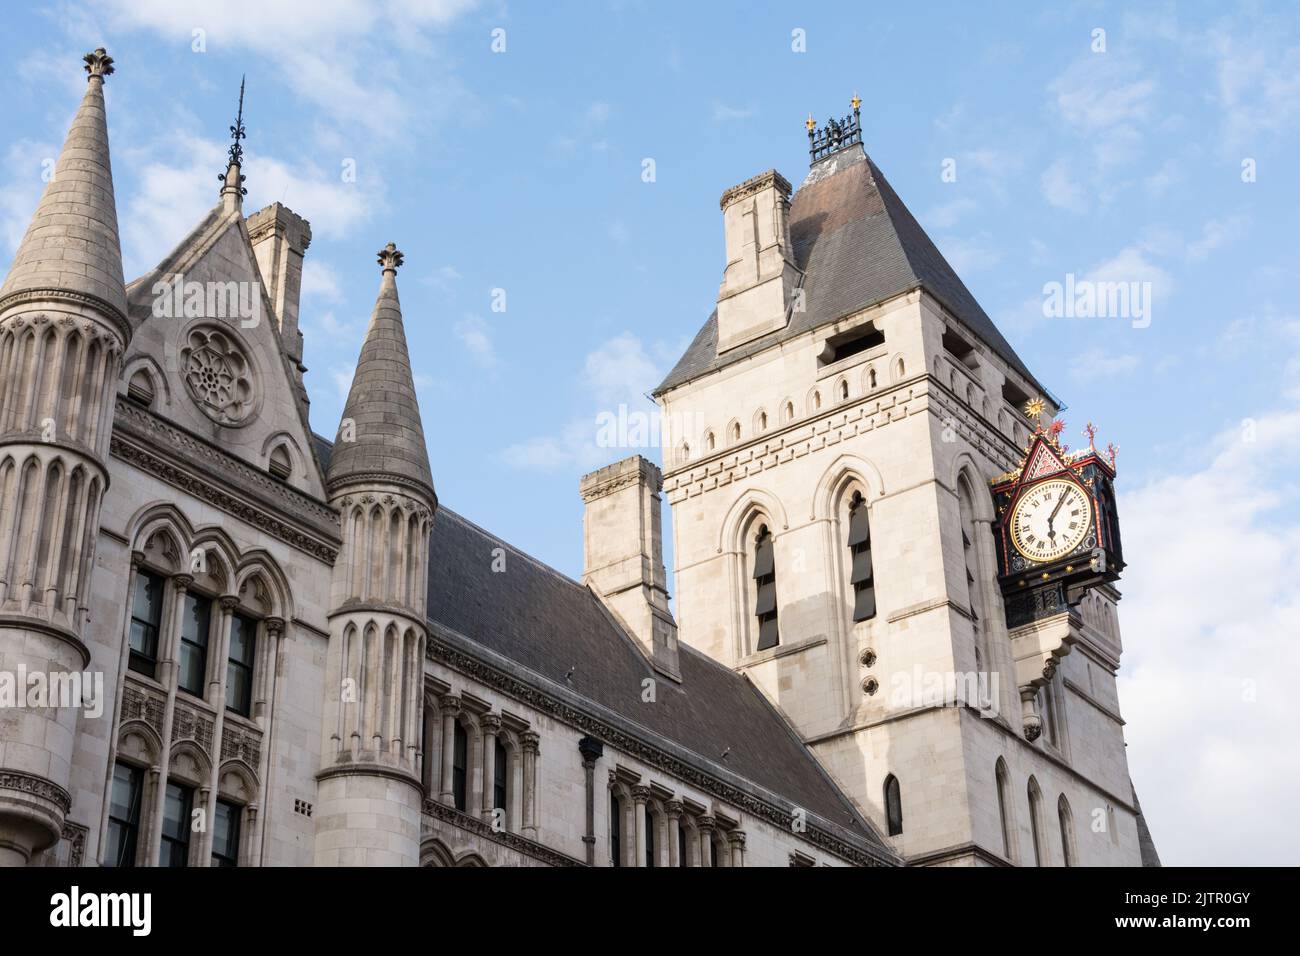 La esfera del reloj y la torre en la Corte Real de Justicia, Fleet Street, Londres, Inglaterra, Reino Unido Foto de stock